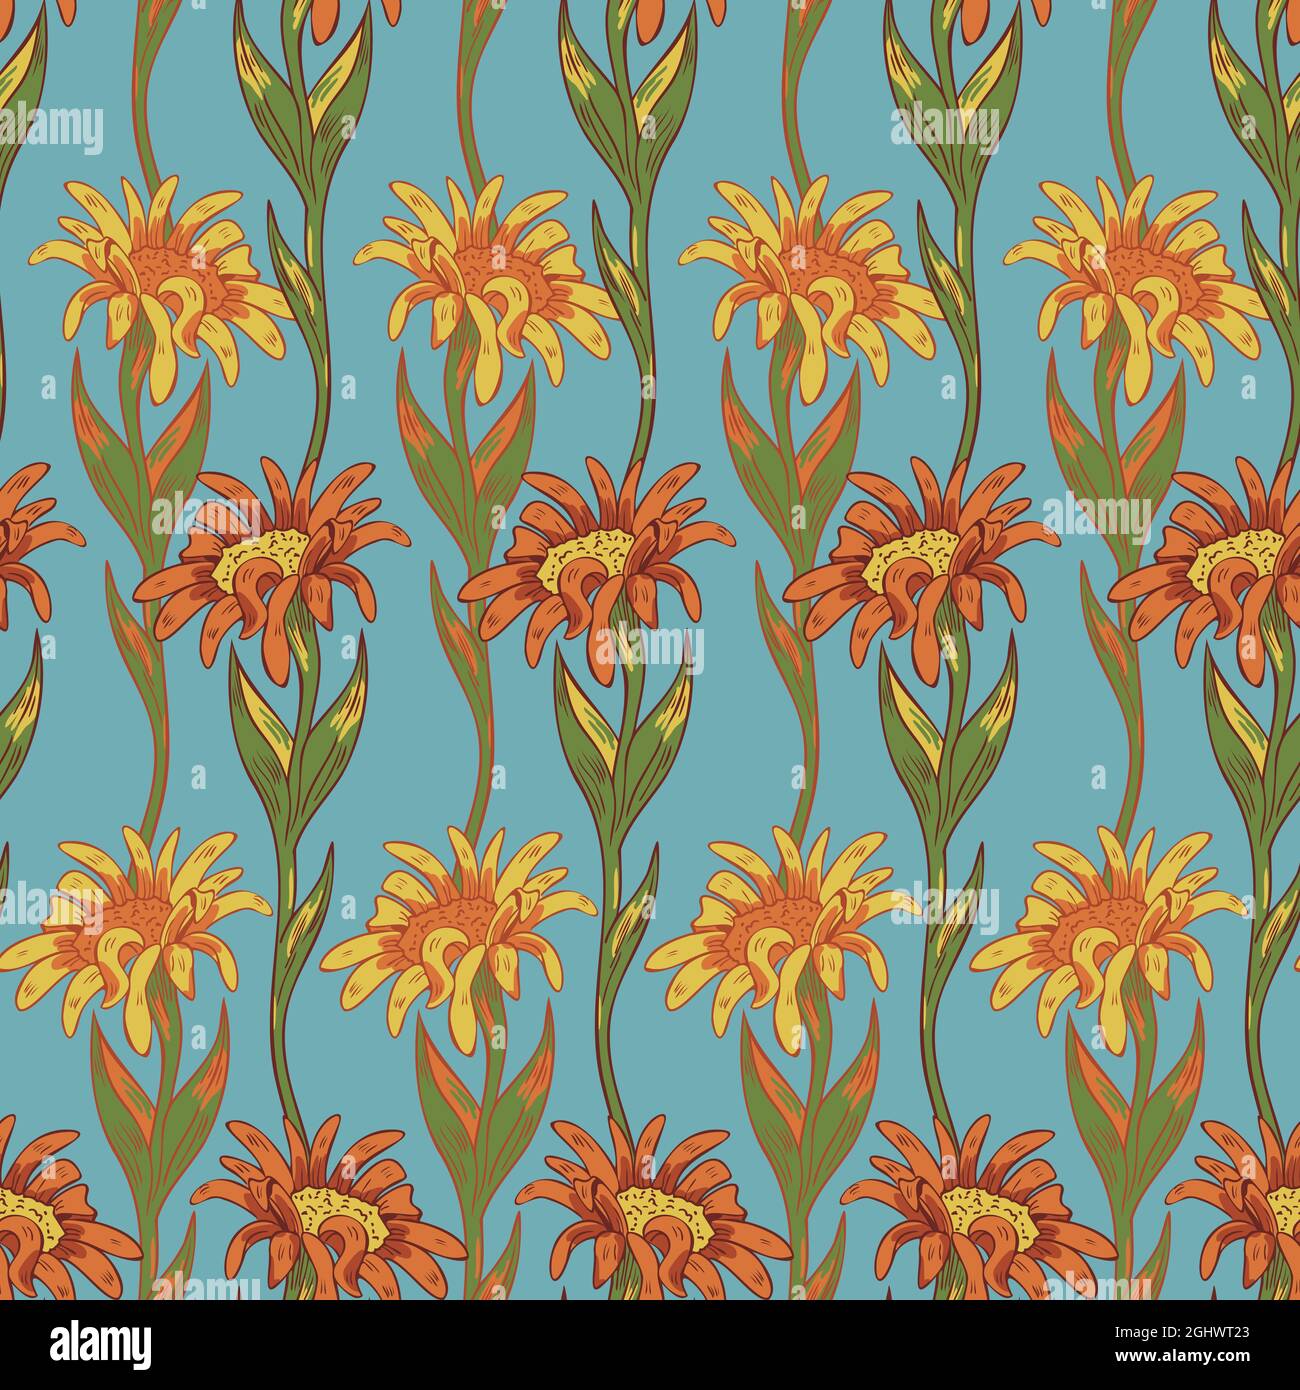 Vektor nahtloses Muster mit bunten Blumen auf kontrastierendem Hintergrund. Handgezeichnetes Design. Stock Vektor